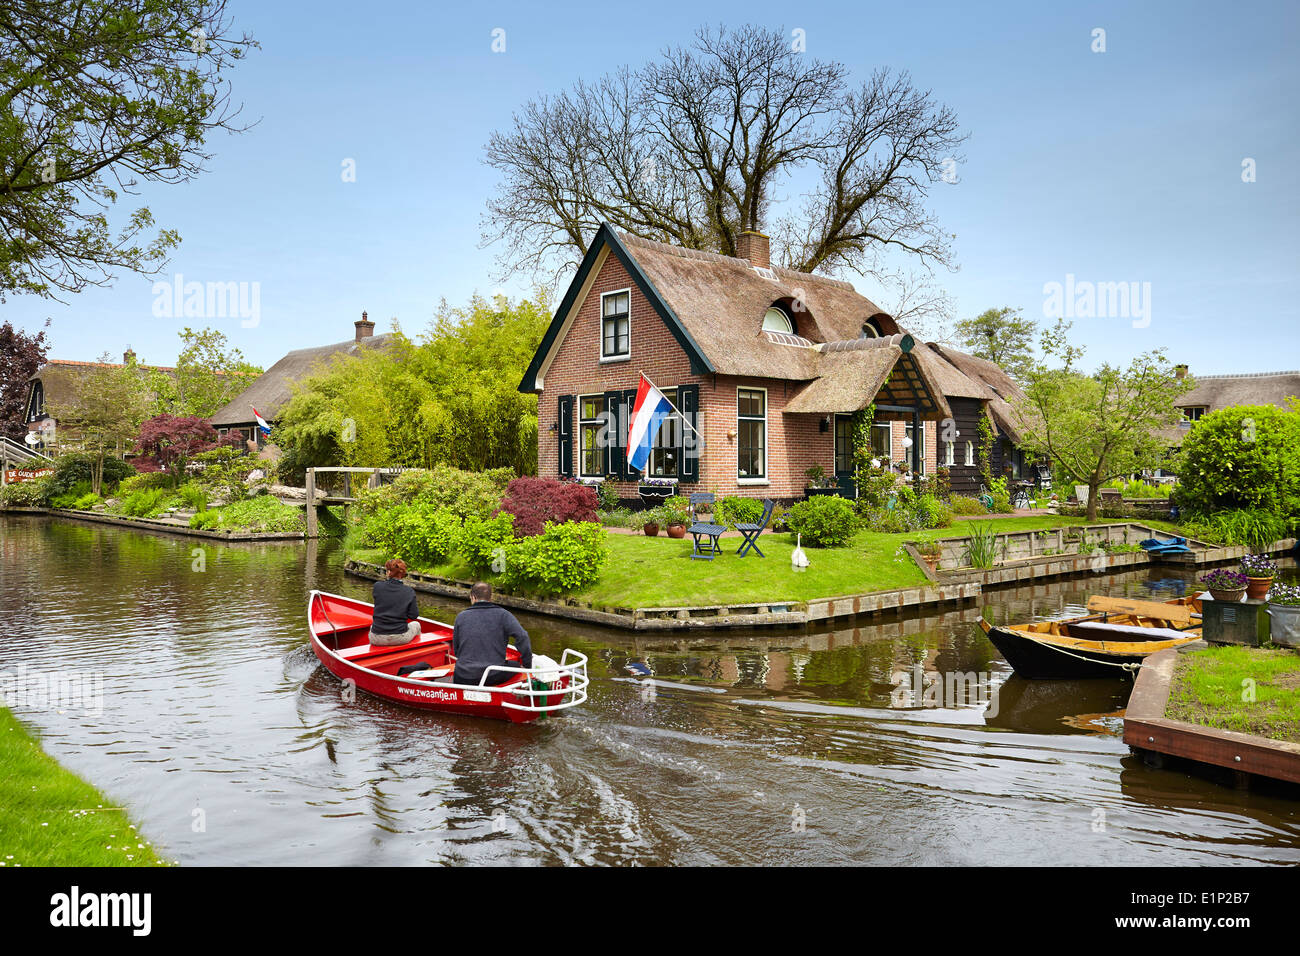 Bateau sur les canaux, le transport local, Giethoorn village - Hollande Pays-Bas Banque D'Images